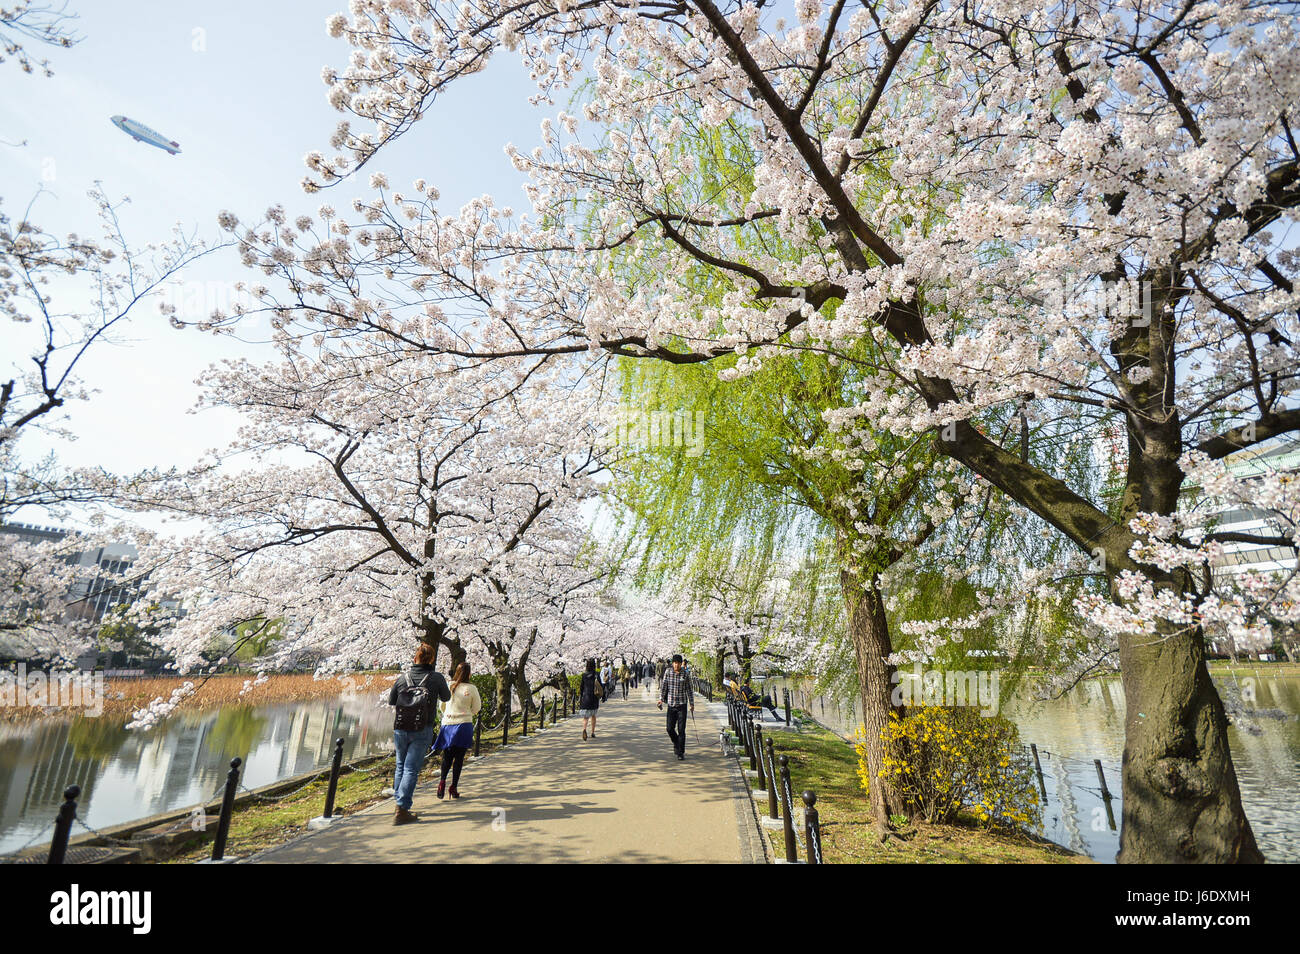 Tokyo, Japan - 2. April 2014: Ueno-Park, weitläufigen öffentlichen Park im Stadtteil Ueno, Tokio. Kirschblüte ist Veranstaltung im Frühjahr Stockfoto